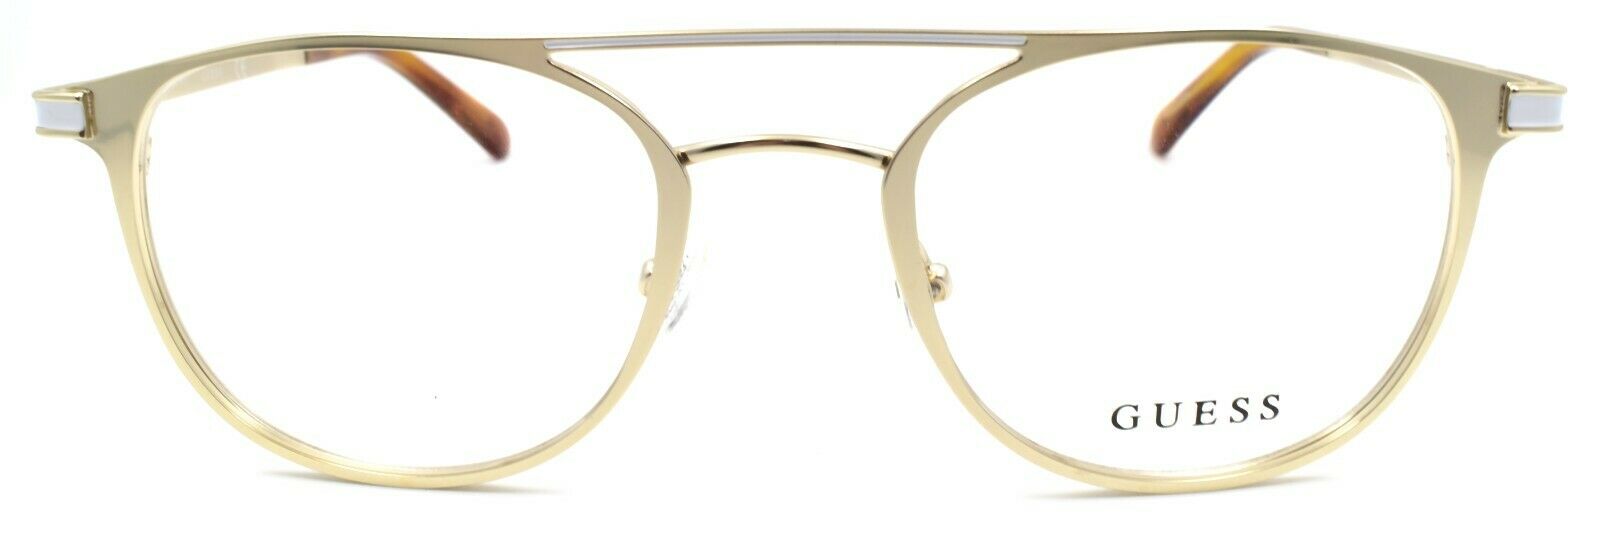 2-GUESS GU1988 032 Men's Eyeglasses Frames Aviator 50-21-145 Pale Gold-889214112729-IKSpecs